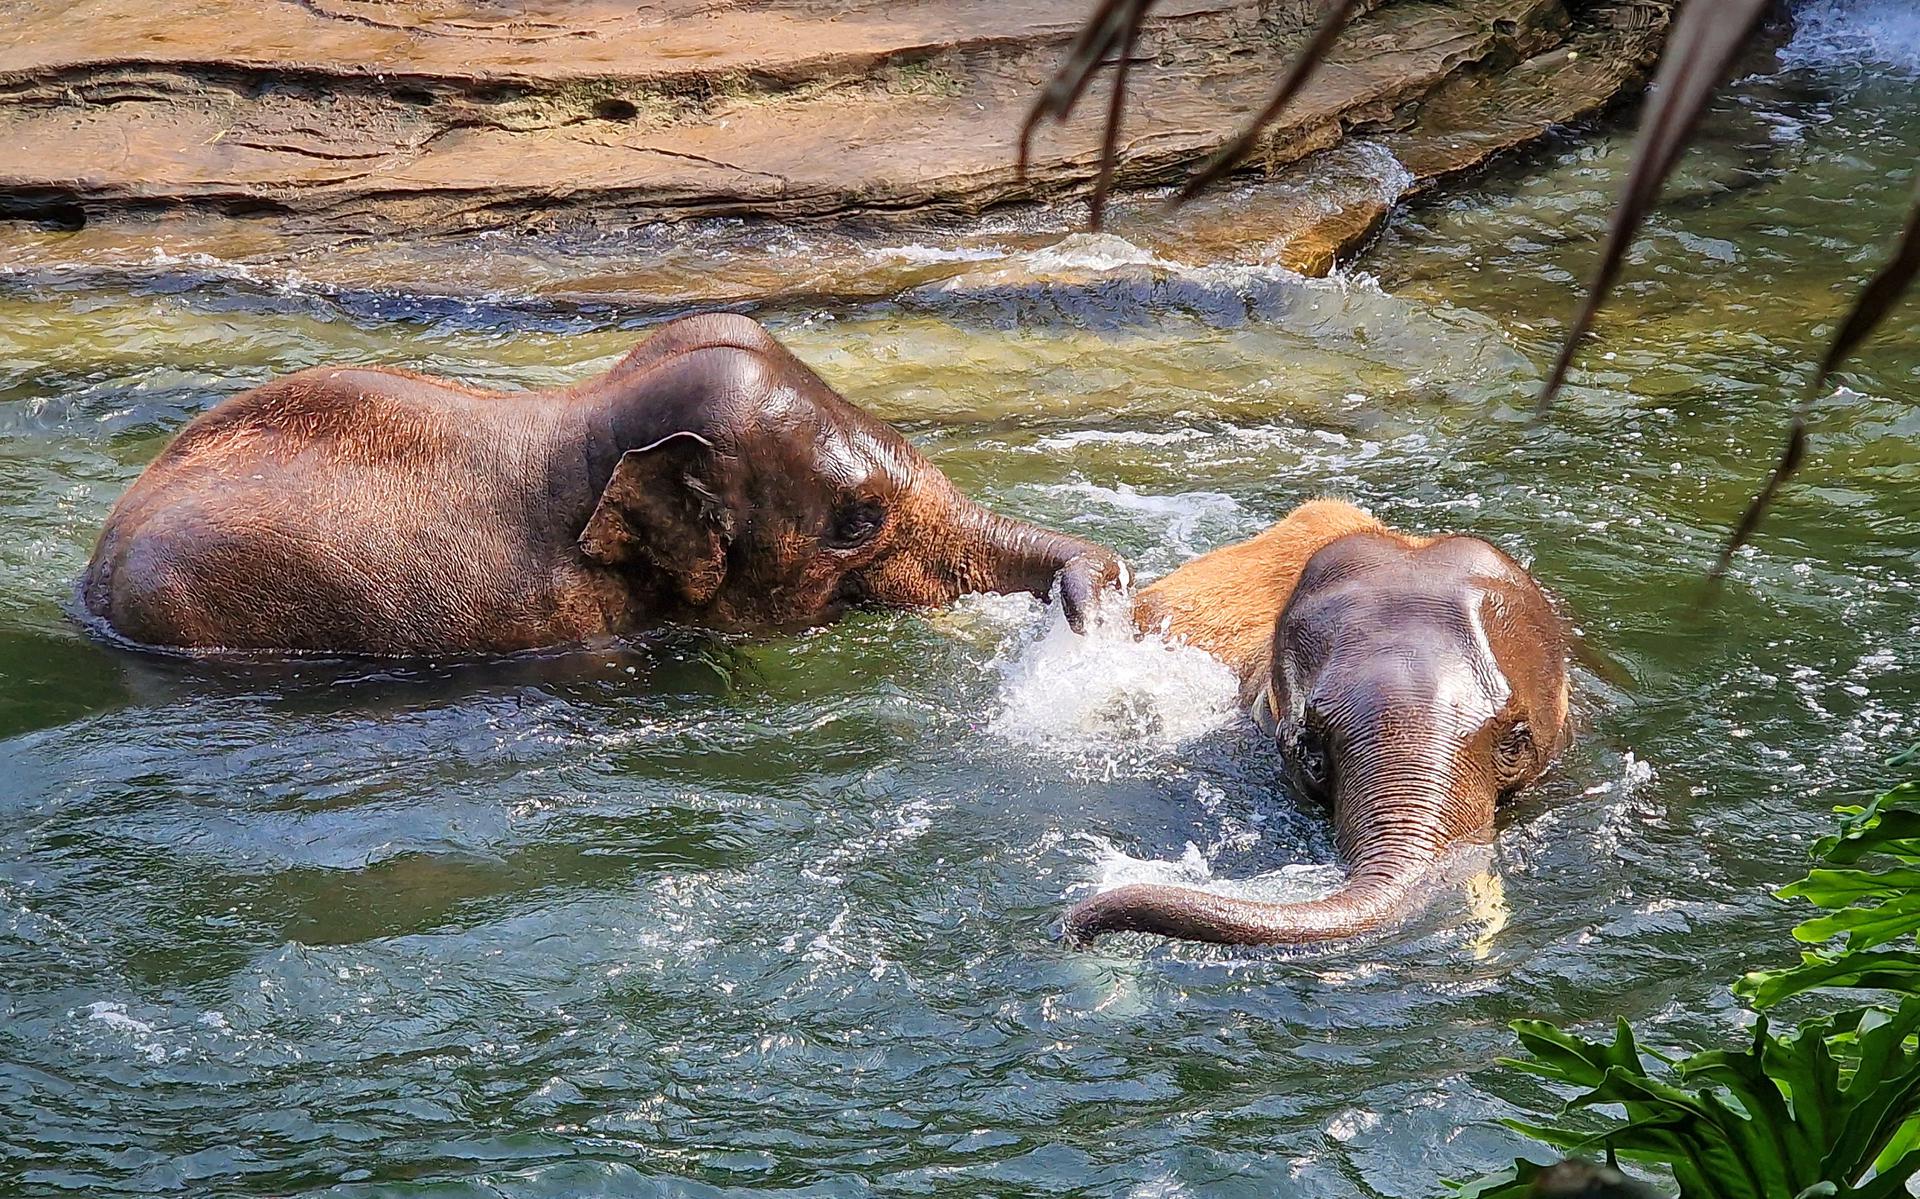 Soms gaan de olifanten kopje onder en dat vinden ze heerlijk.